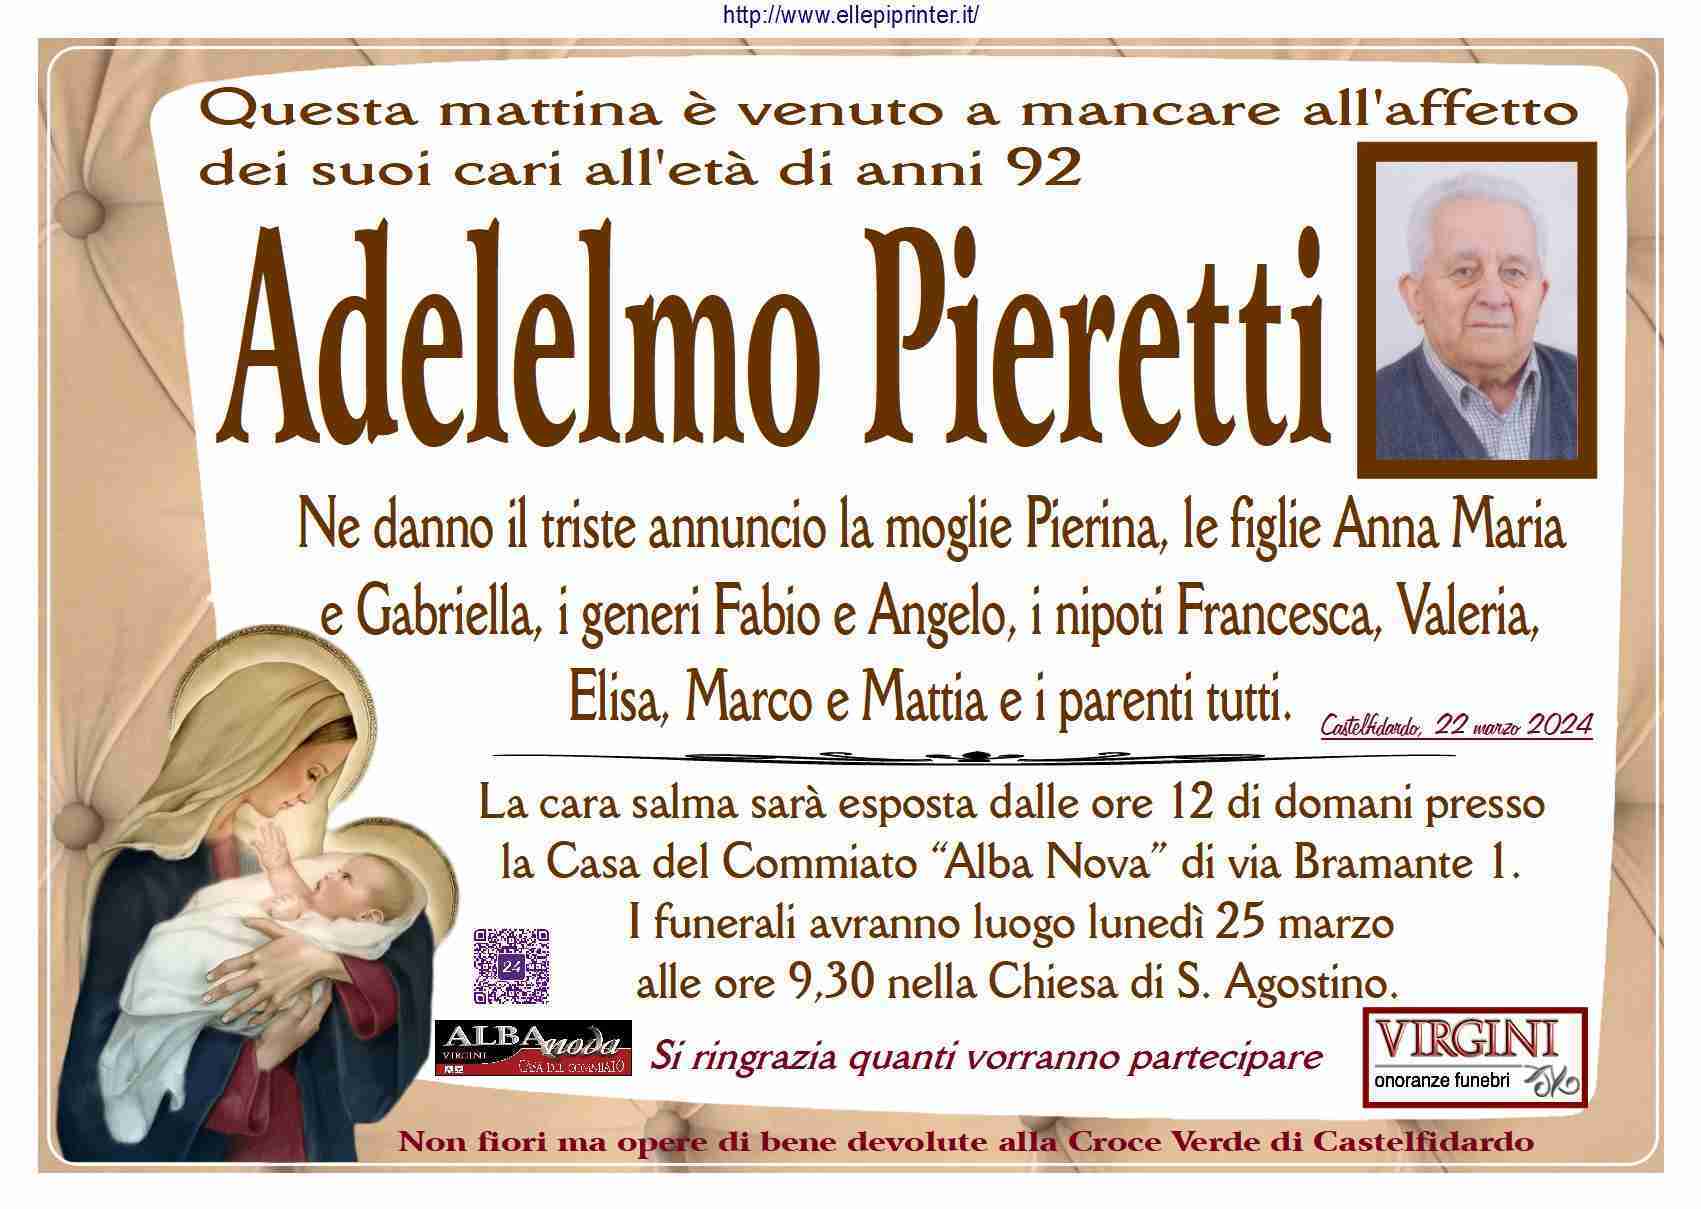 Adelelmo Pieretti